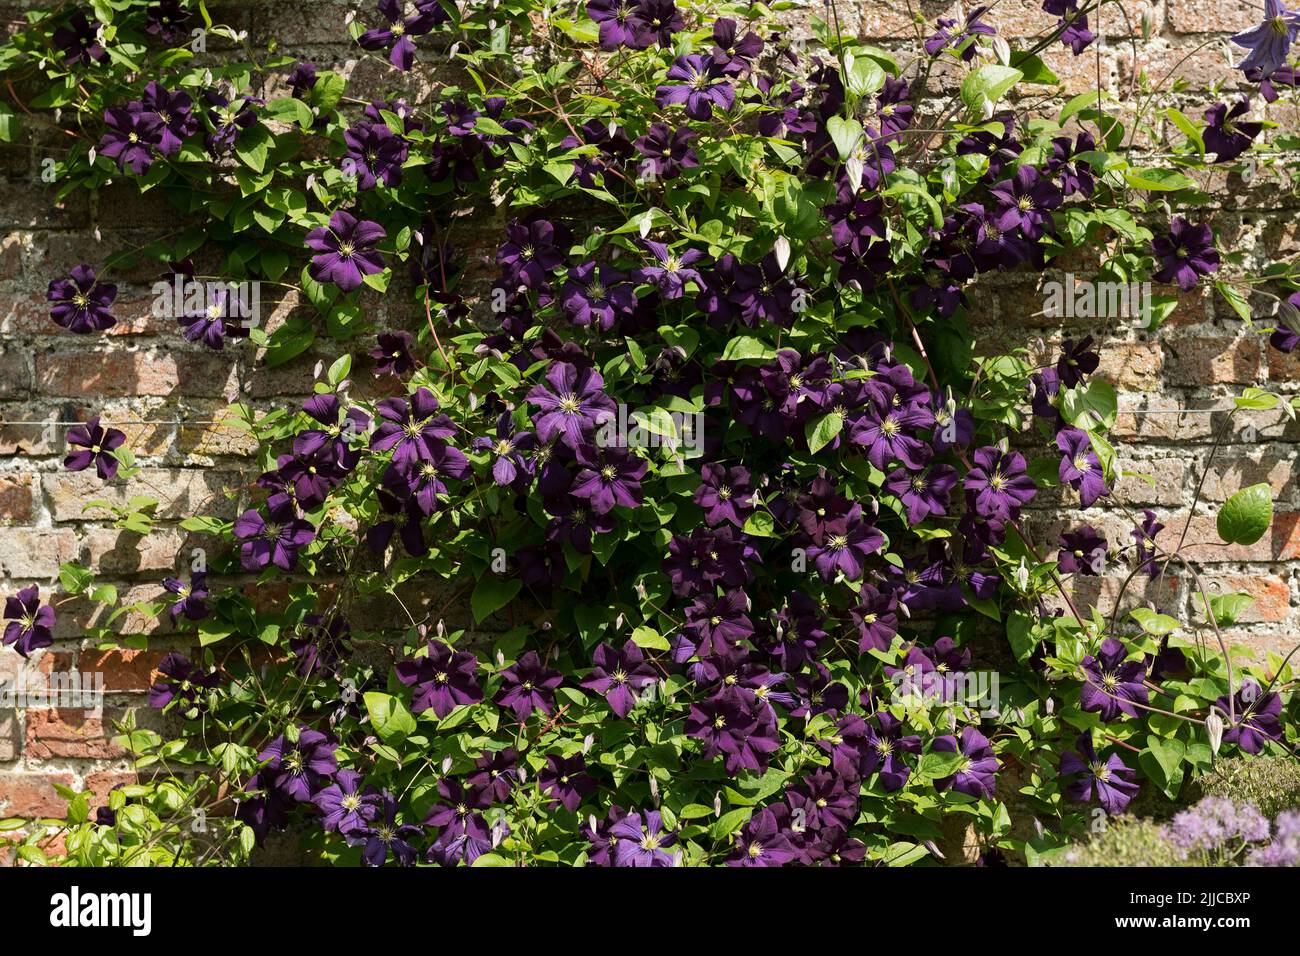 Gros plan de violet foncé grimpant grimpeur clematis Jackmanii fleurs fleuries sur un mur dans le jardin été Angleterre Royaume-Uni Grande-Bretagne Banque D'Images